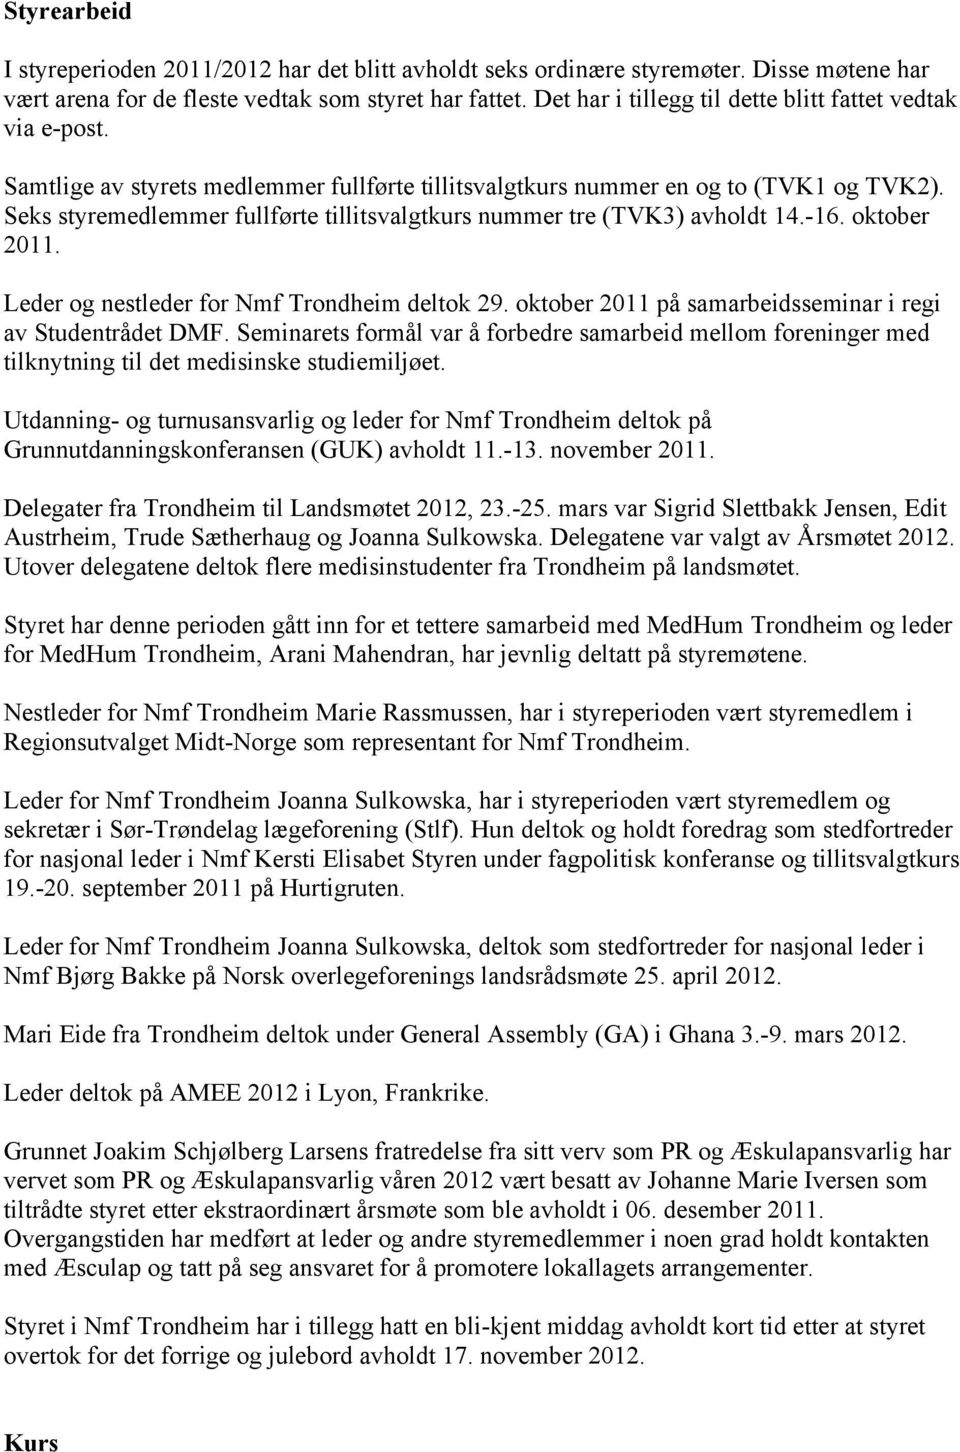 Seks styremedlemmer fullførte tillitsvalgtkurs nummer tre (TVK3) avholdt 14.-16. oktober 2011. Leder og nestleder for Nmf Trondheim deltok 29.